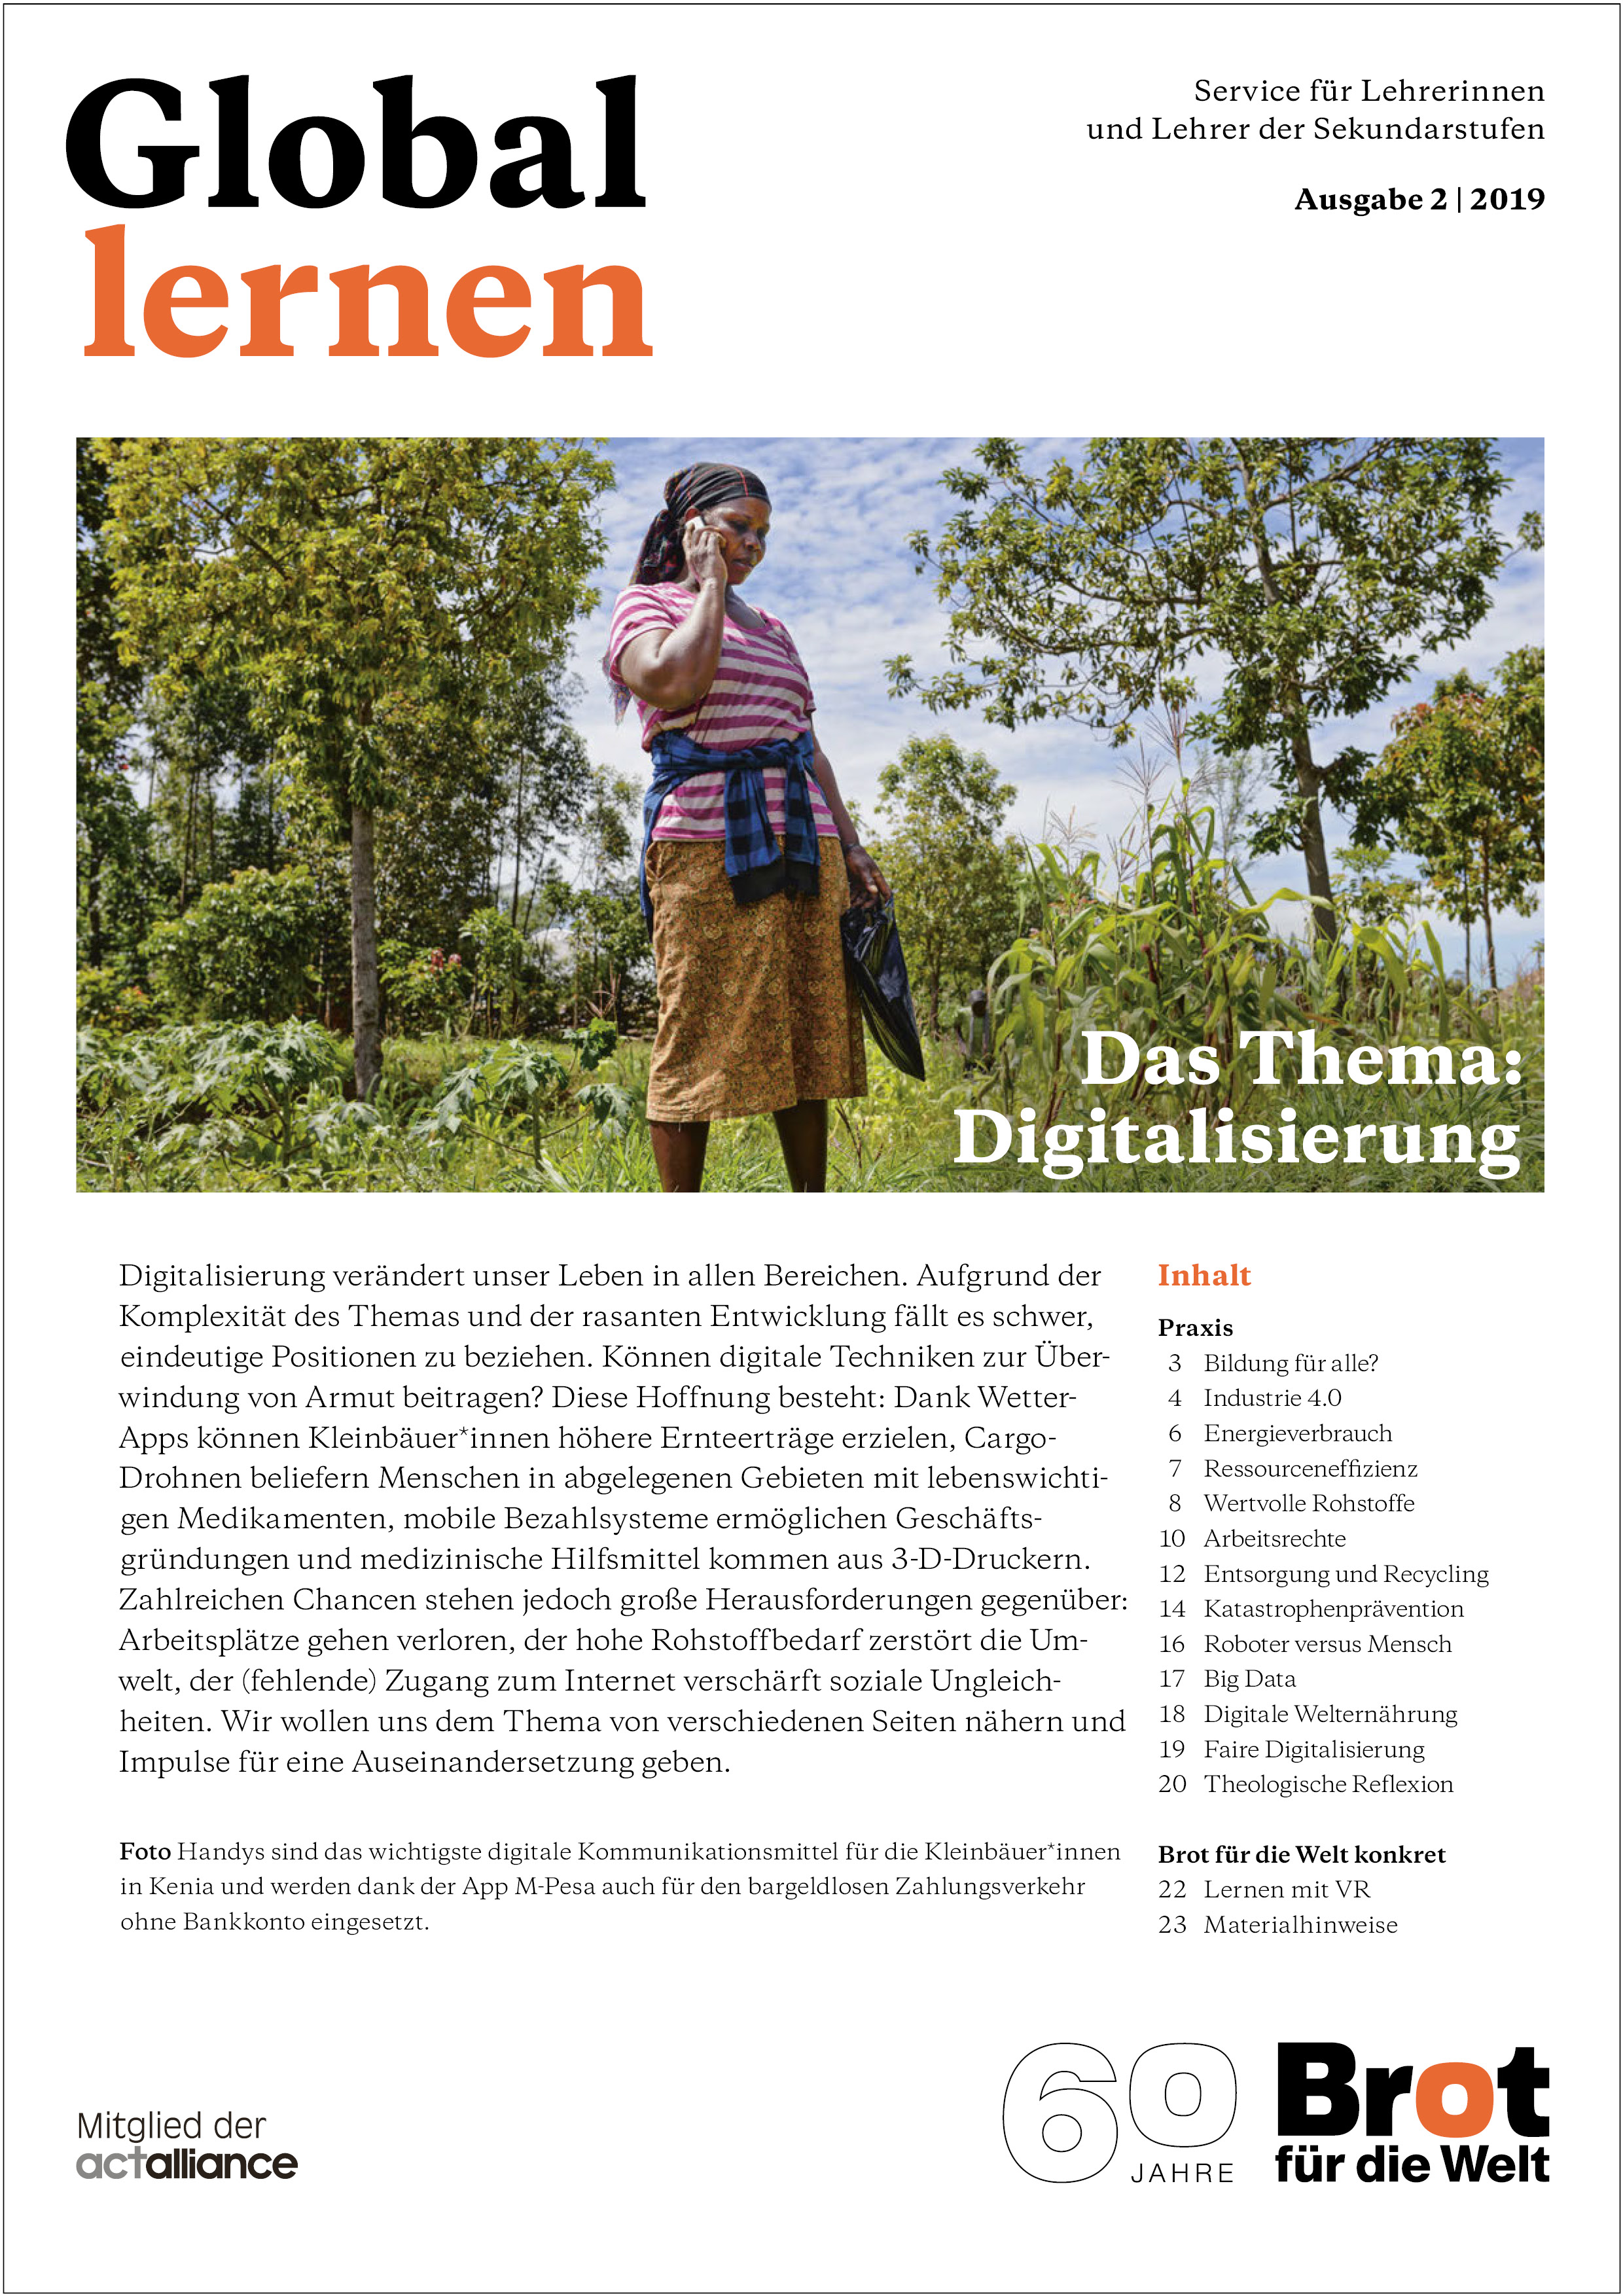 Global lernen: Digitalisierung